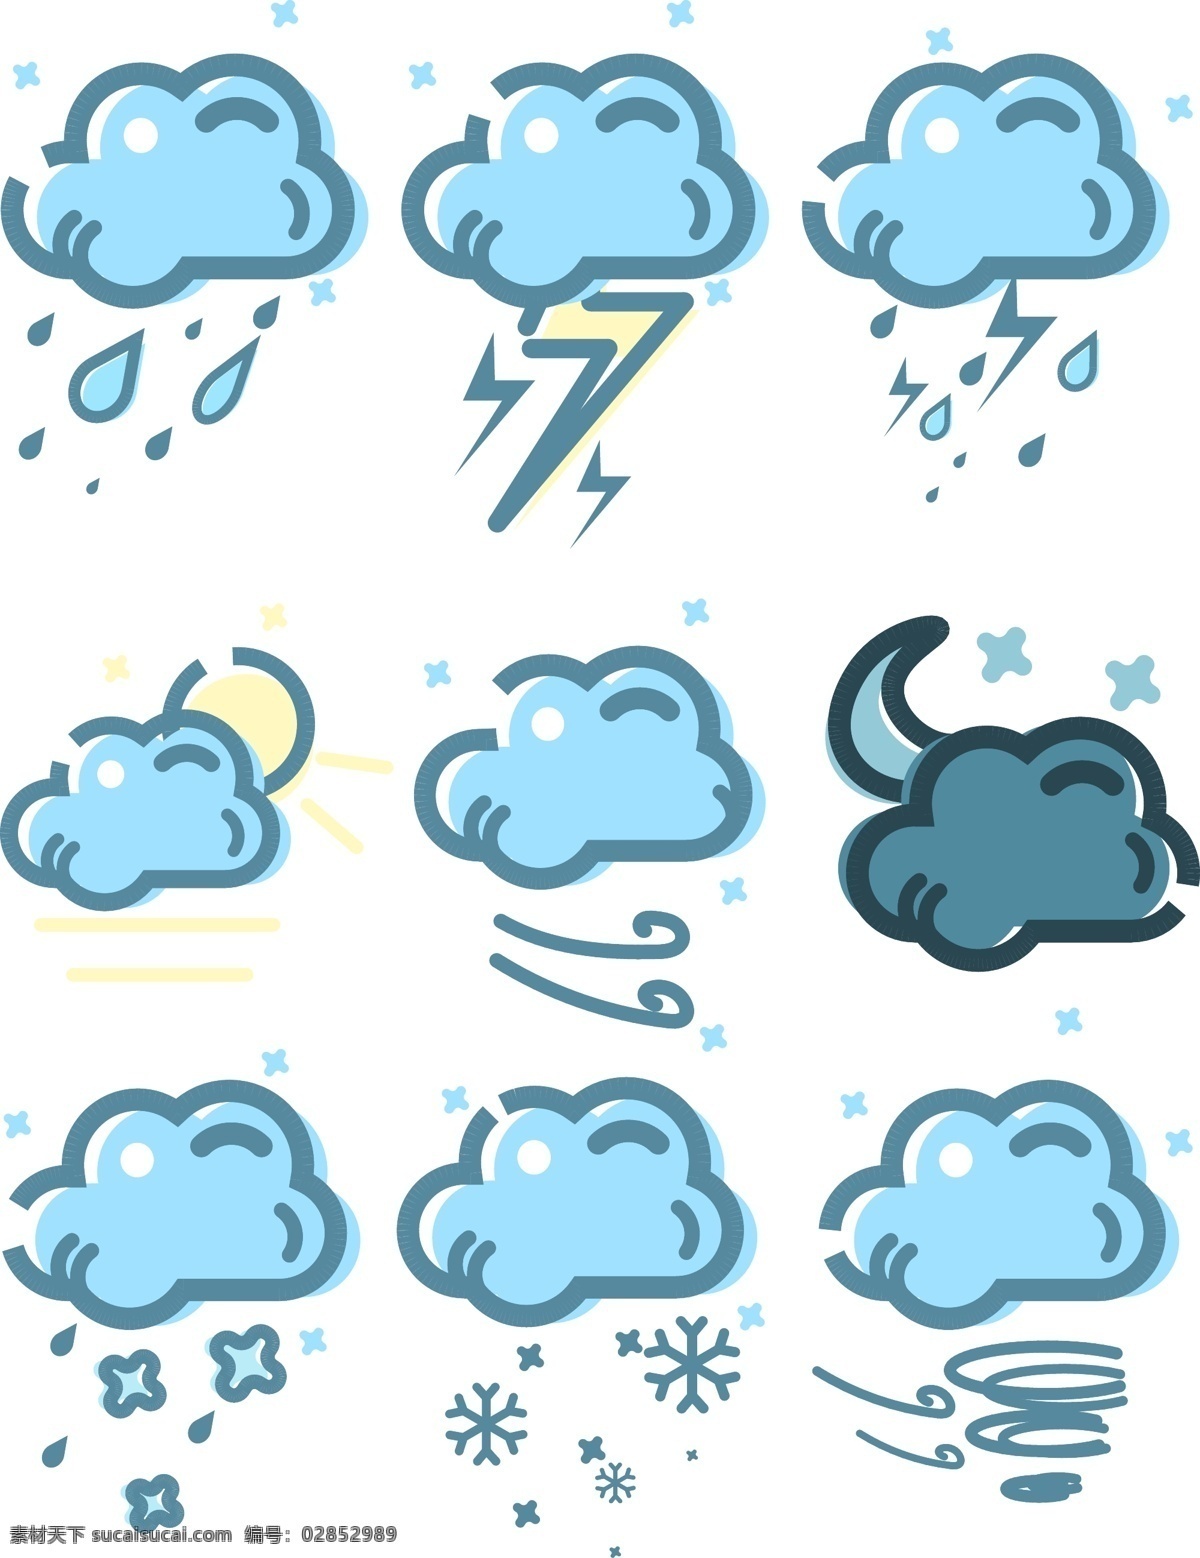 卡通 可爱 天气 图标 装饰 卡通可爱 天气图标 云朵 图标装饰 蓝色 简约